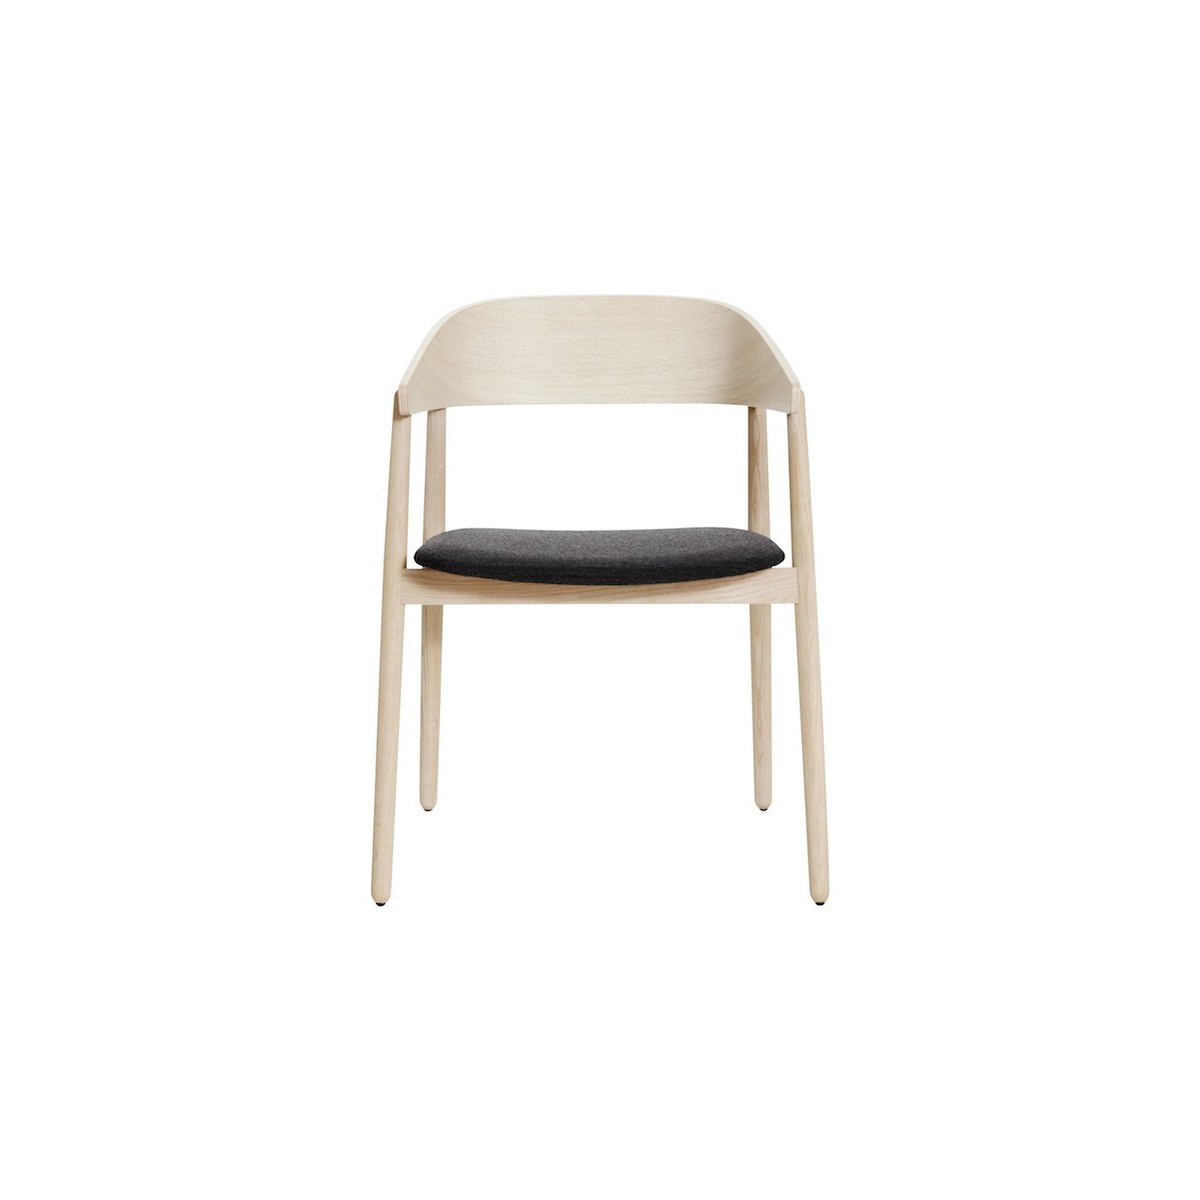 siège cuir noir - chêne vernis blanc mat - chaise AC2